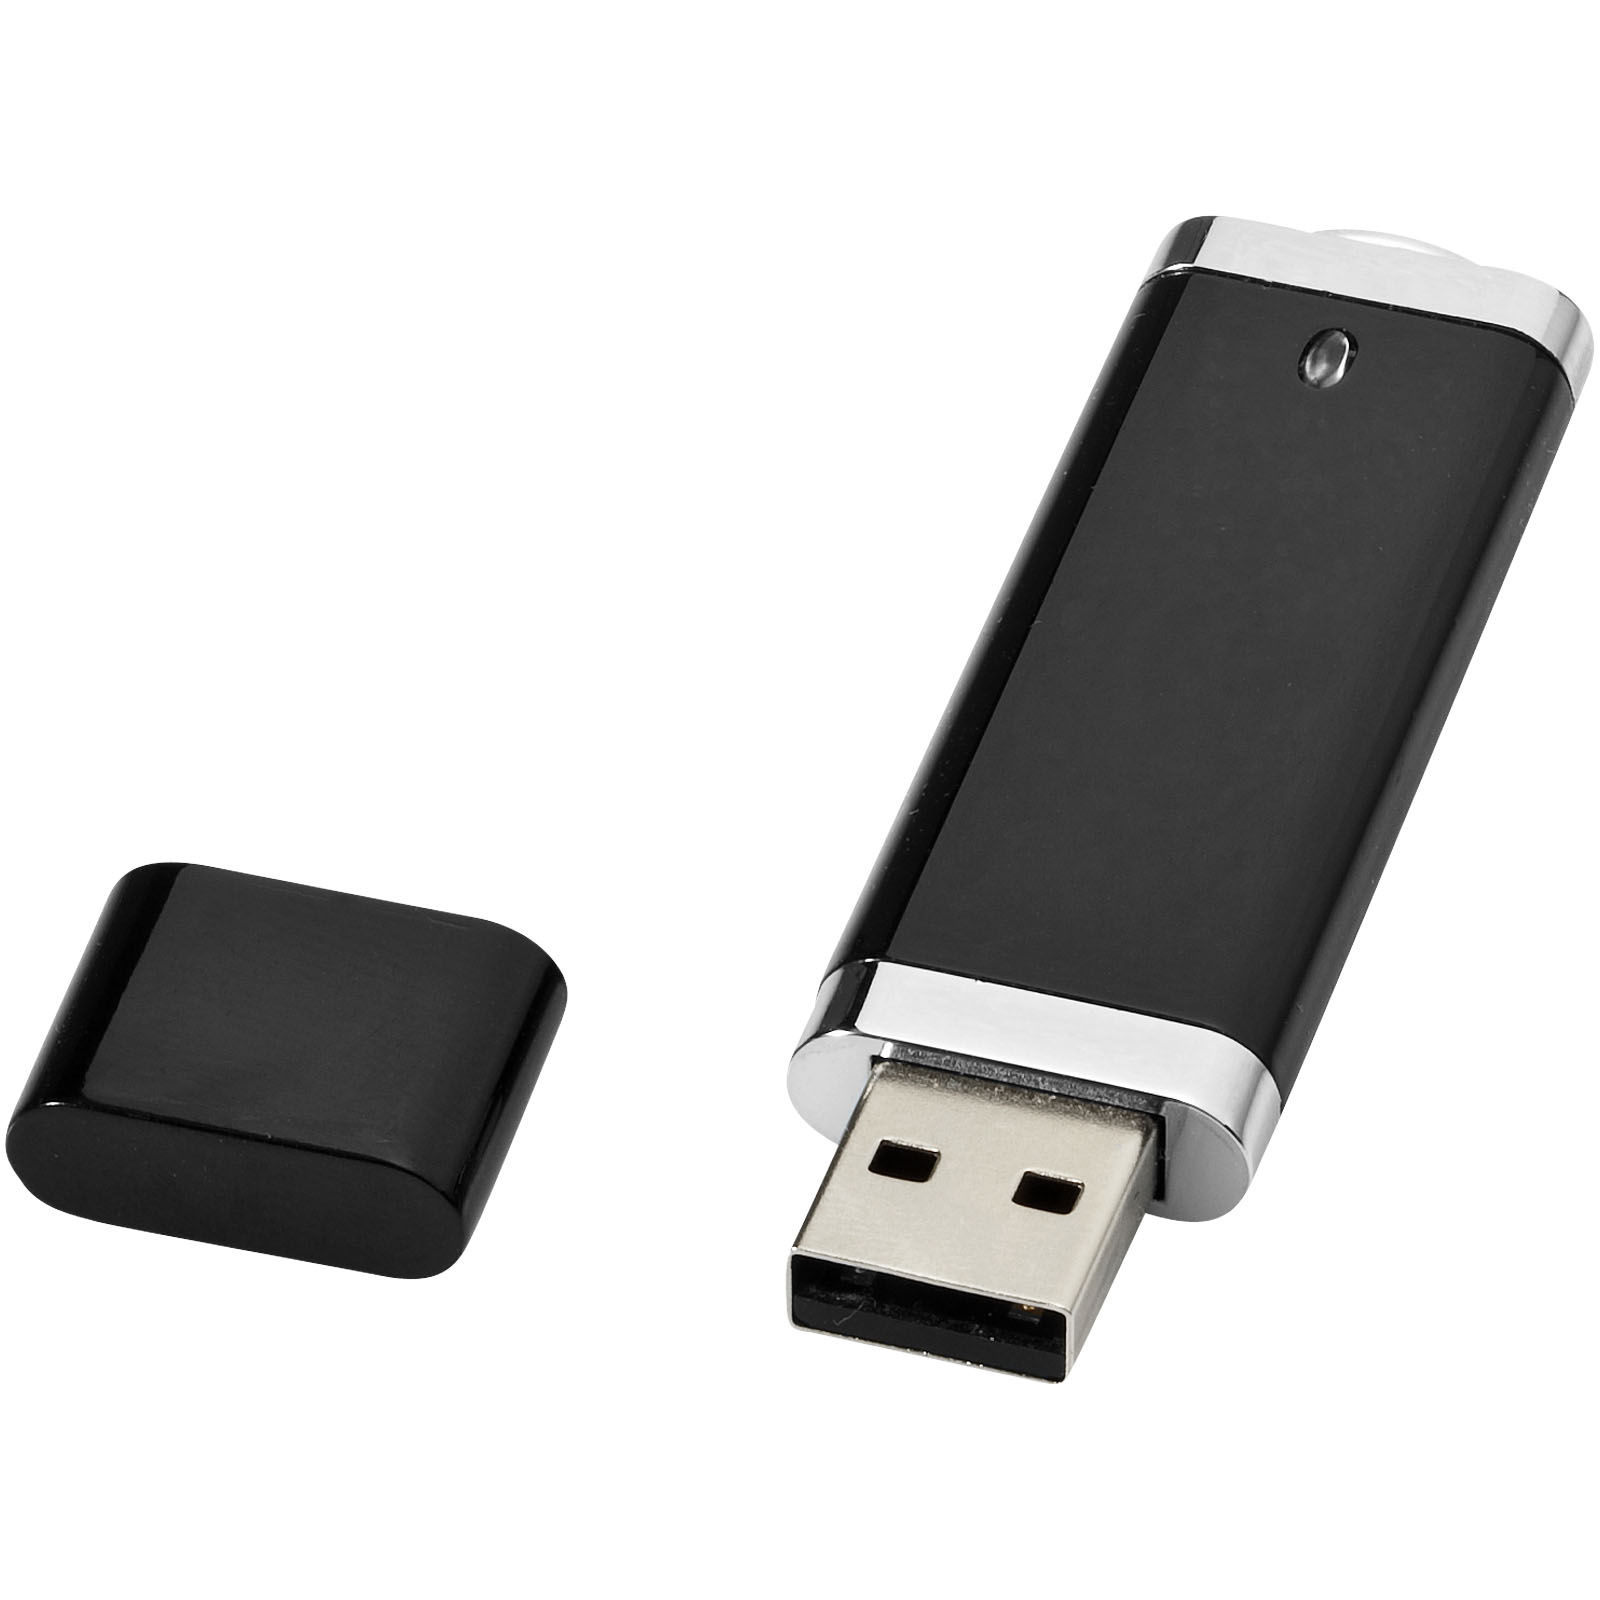 USB Edge aziendale - Montepulciano